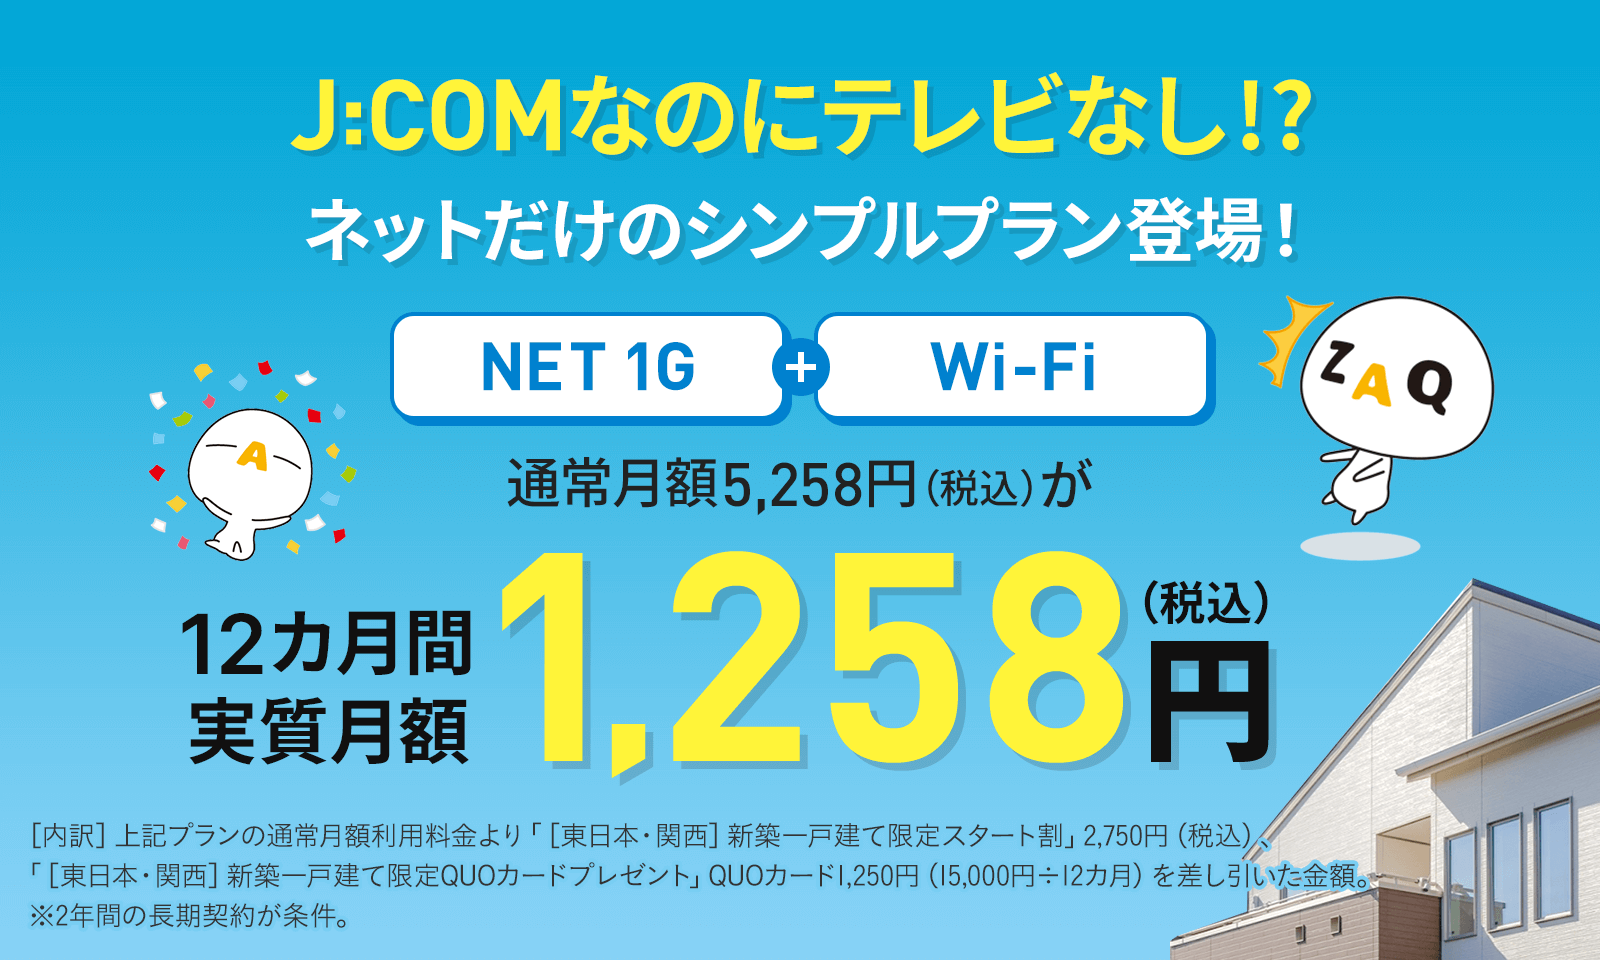 ネットだけのシンプルプラン登場 お得NET 320M + Wi-Fi